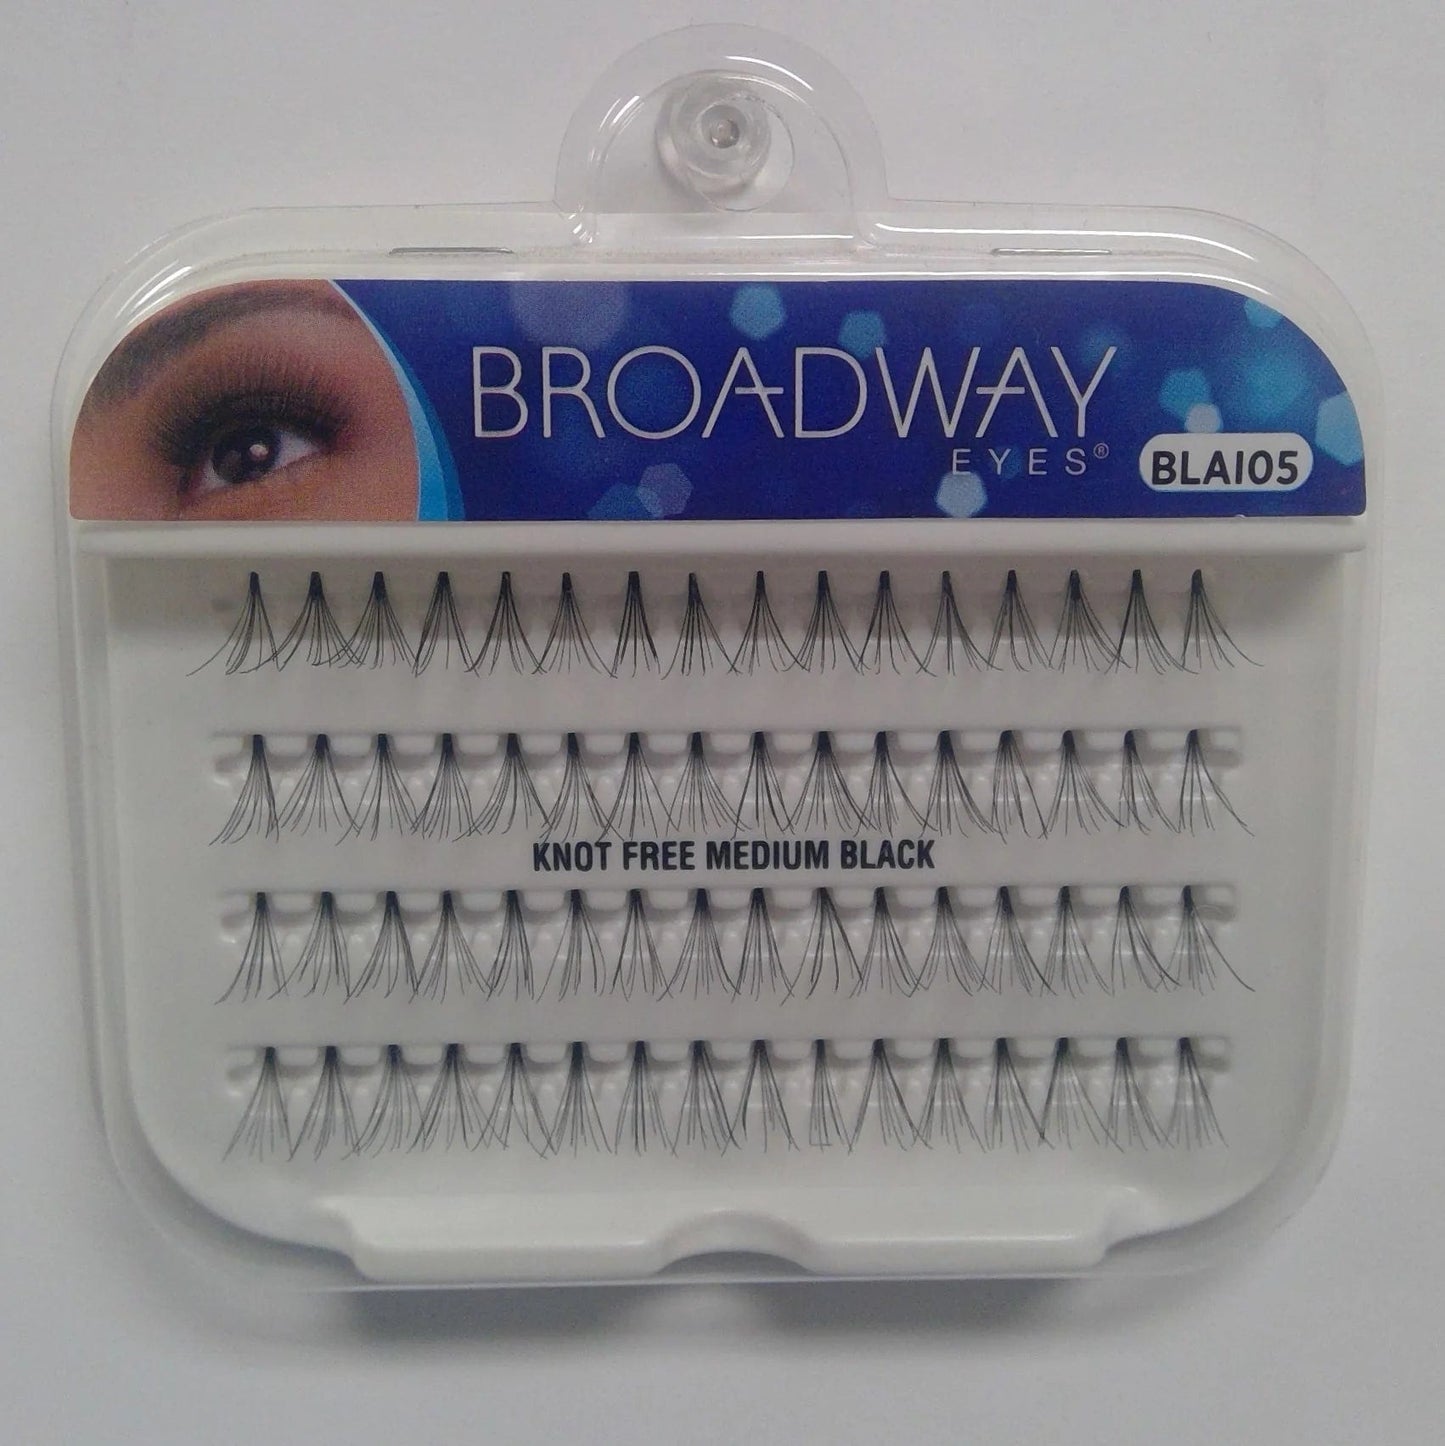 Broadway Eyes Individual Flare Lashes